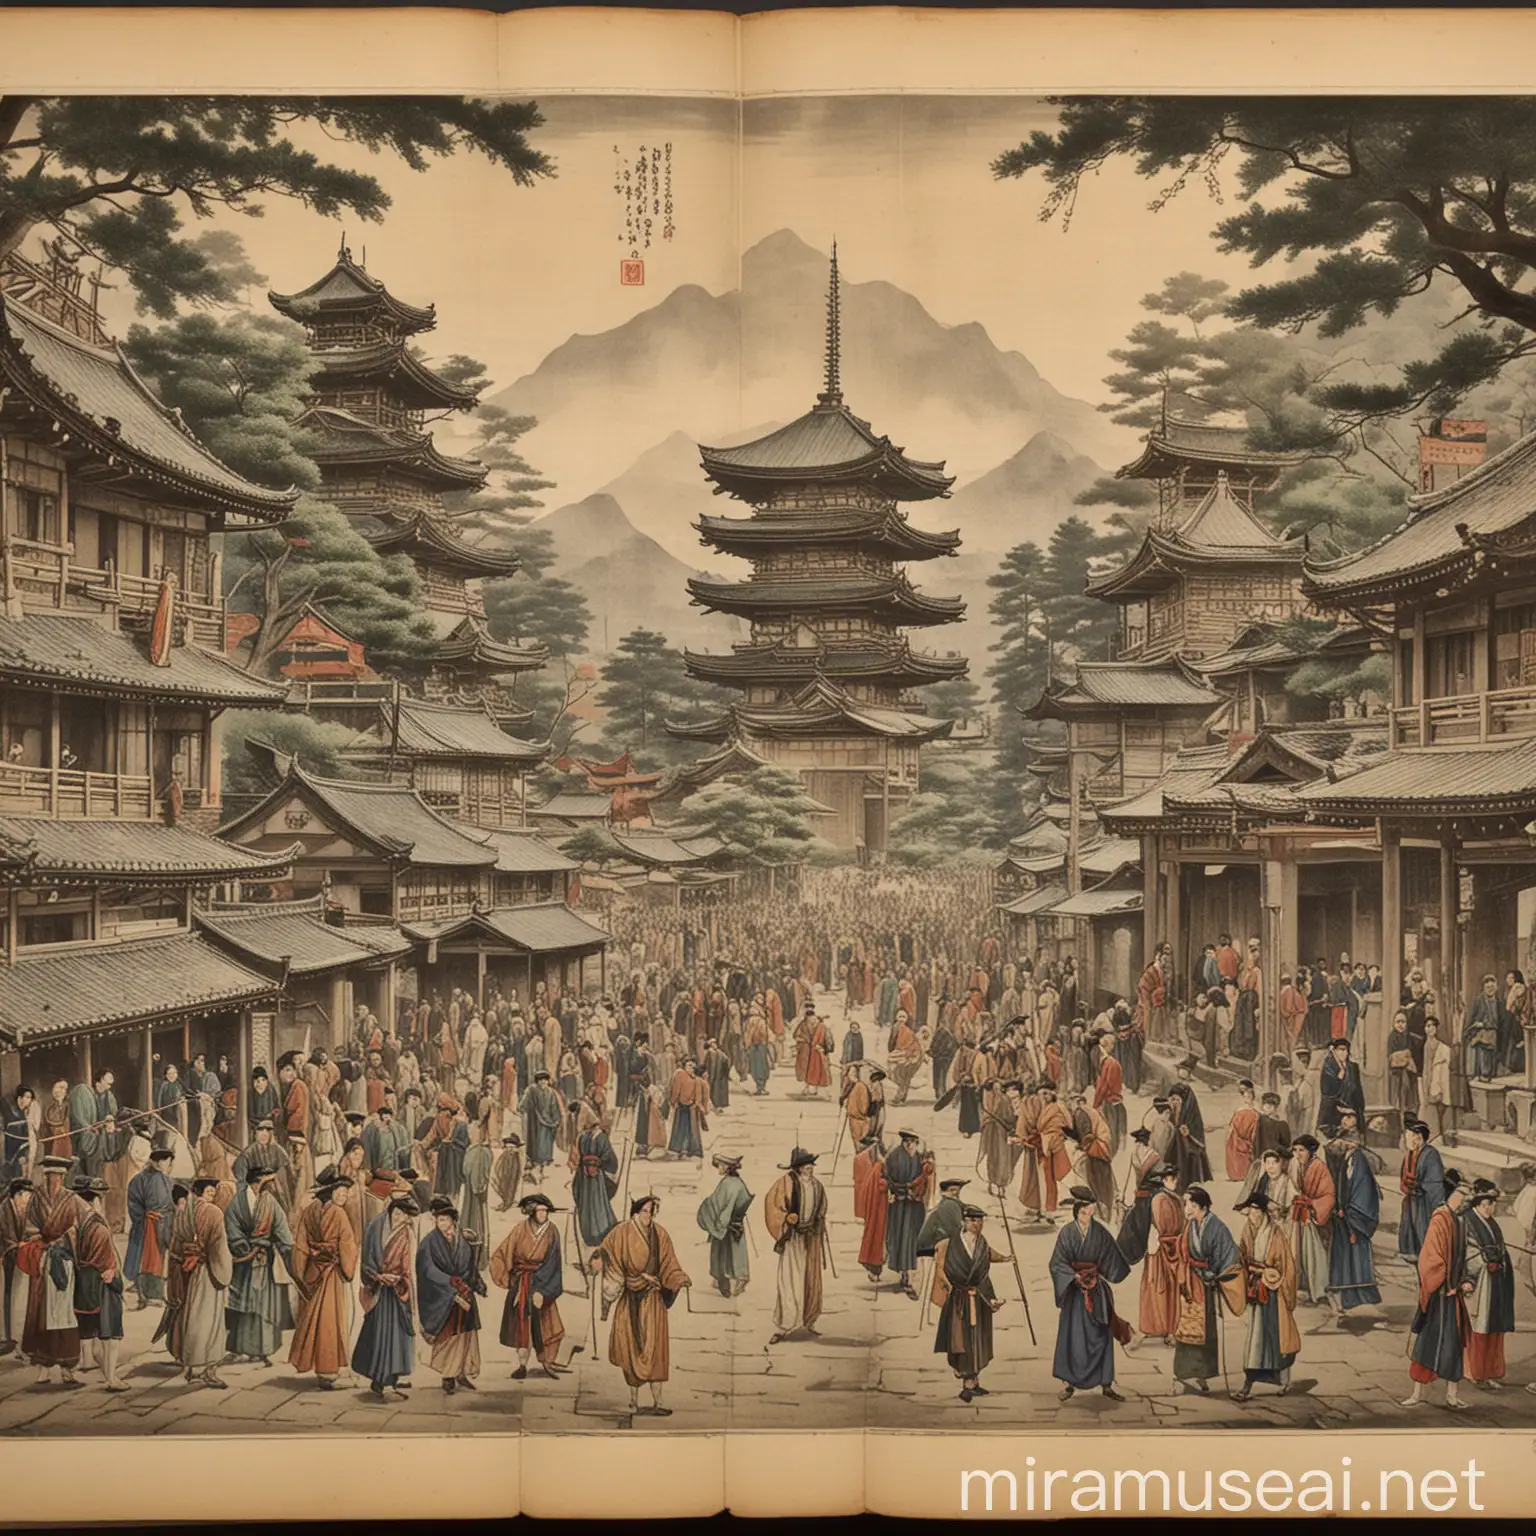 History of Japanese wonders